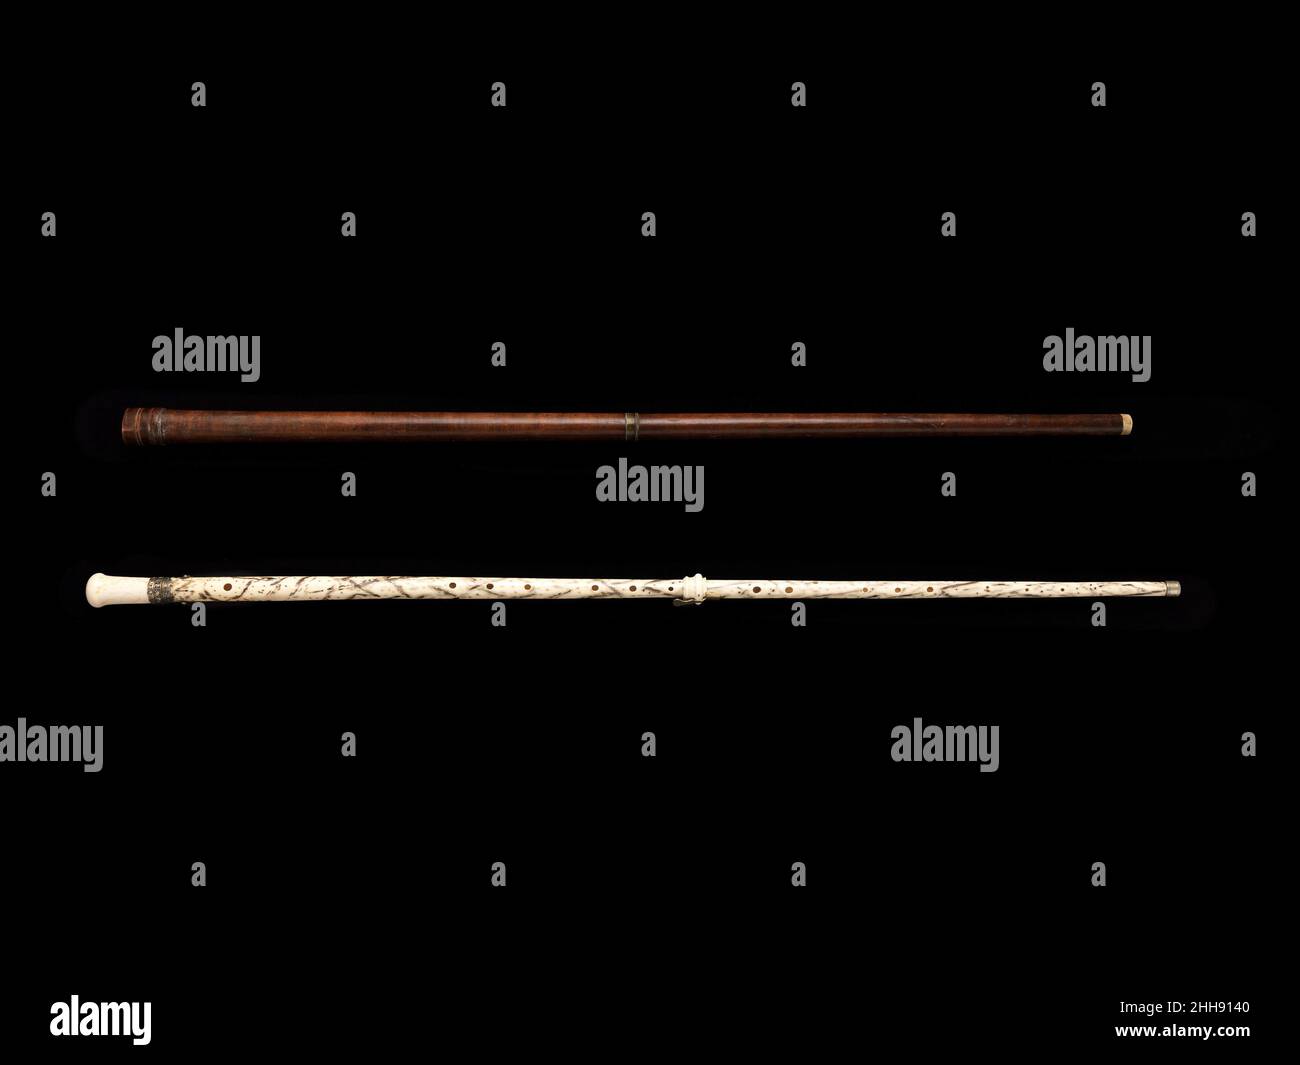 Alamy Horn -Fotos Auflösung und in hoher -Bildmaterial – eingelegt